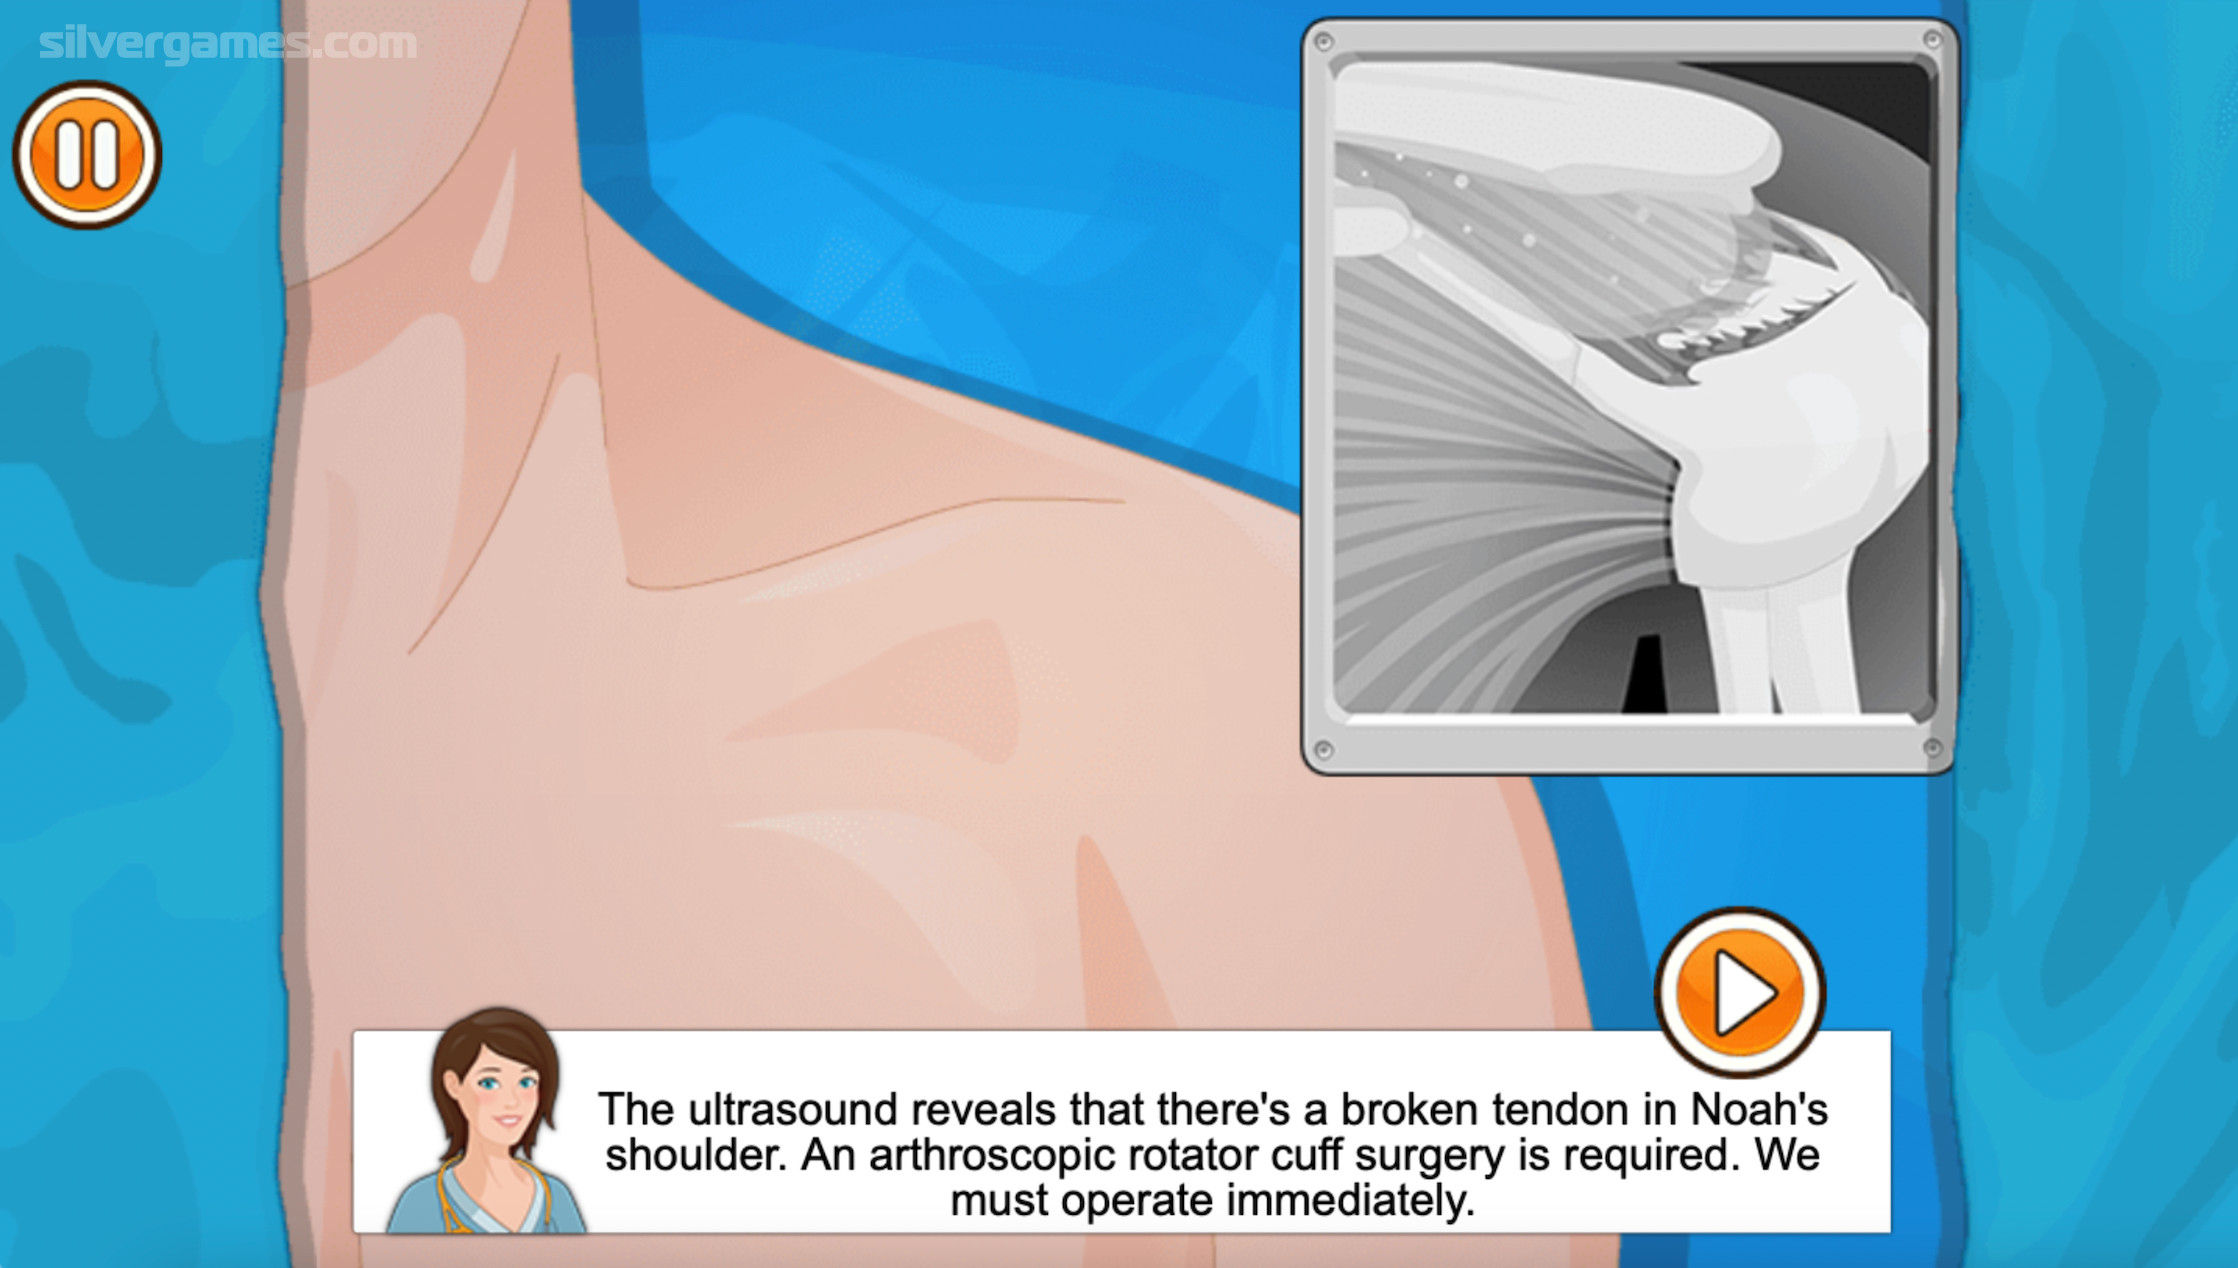 Jogo Operate Now: Shoulder Surgery no Jogos 360